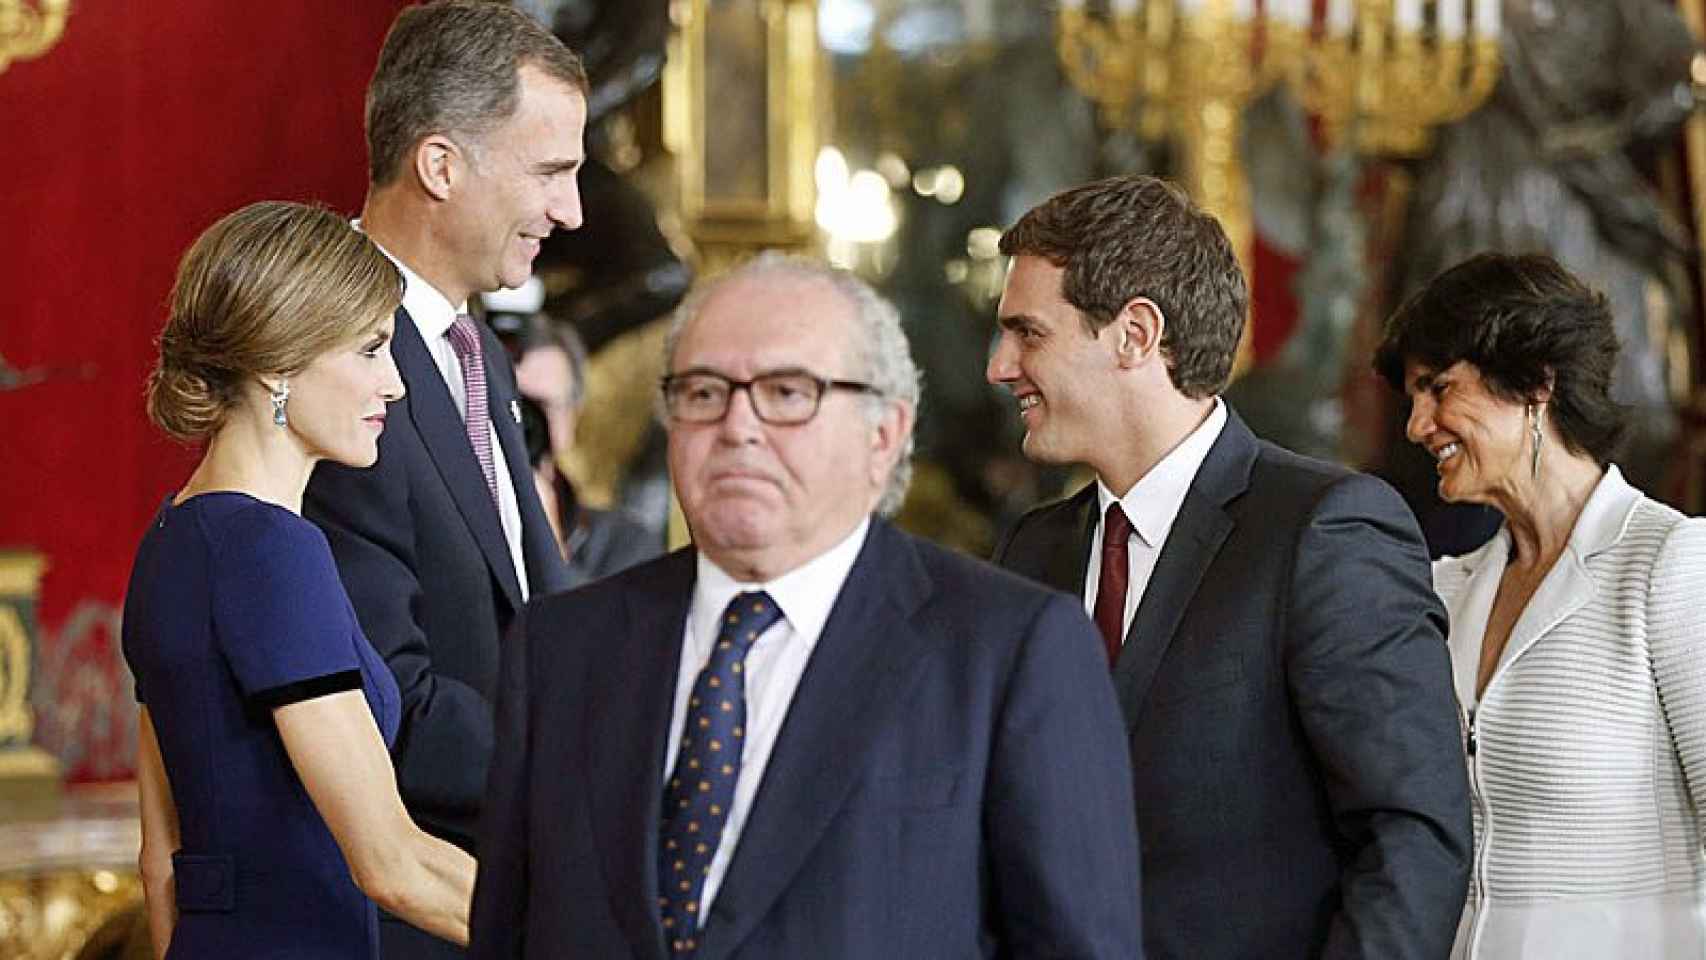 Los Reyes Fel¡pe y Letizia saludan al presidente de Ciudadanos, Albert Rivera, durante la recepción de este lunes en el Palacio Real con motivo de la Fiesta Nacional